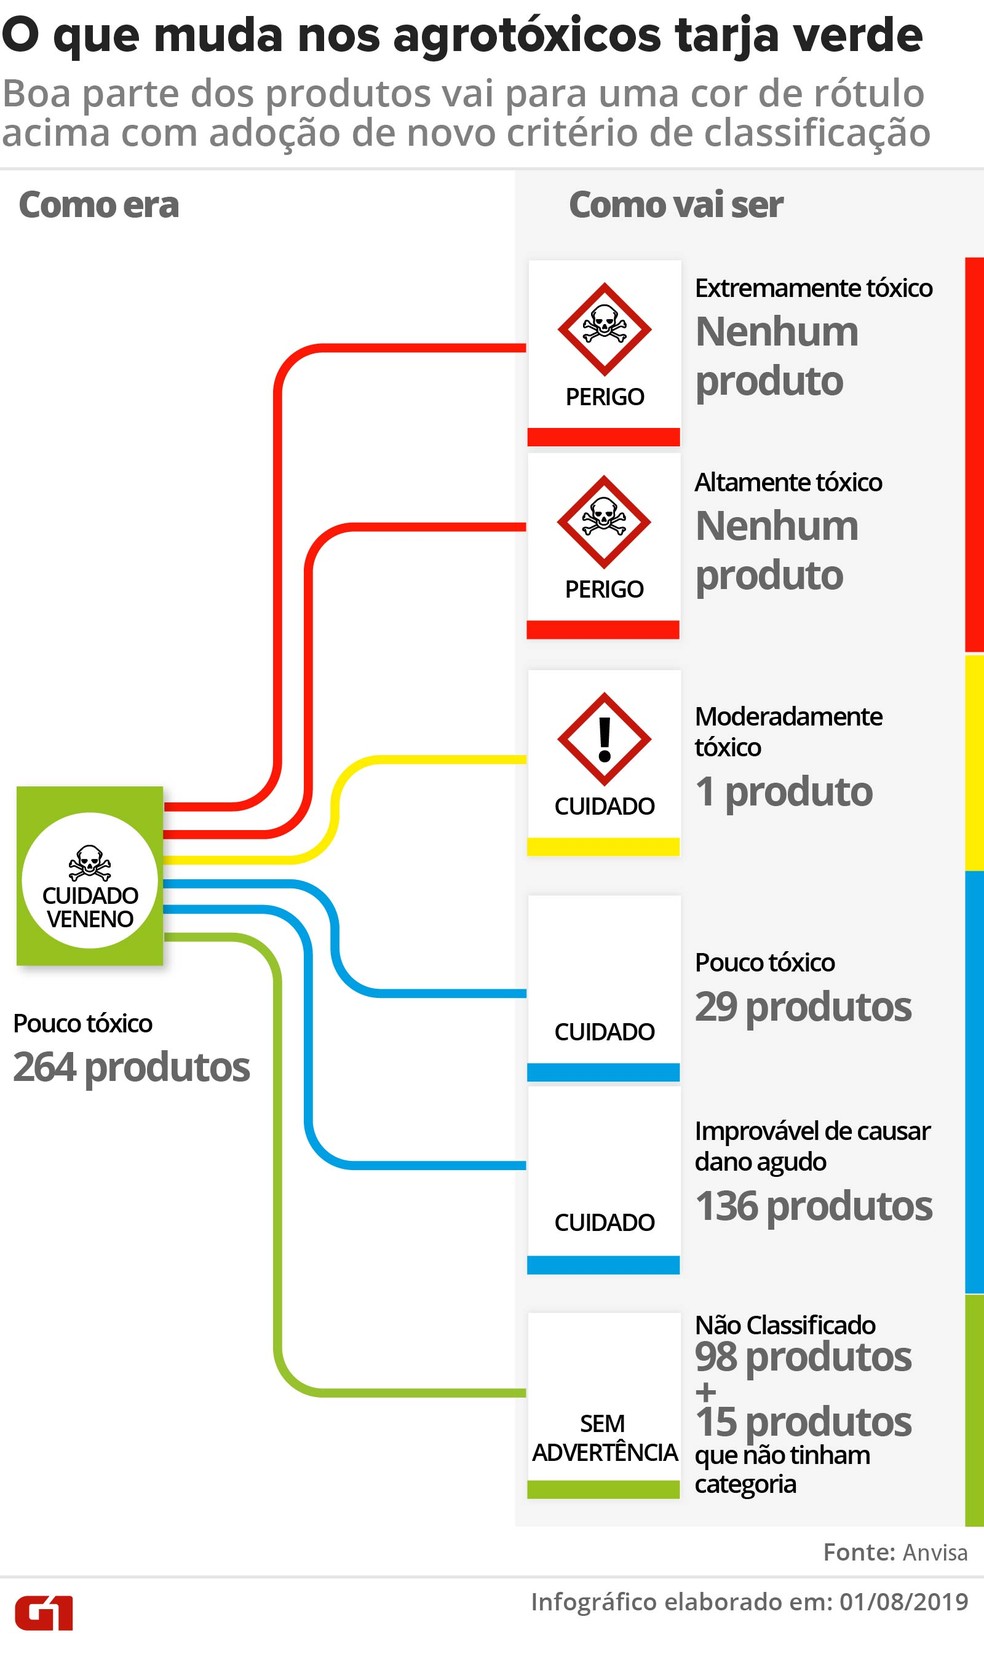 Veja a distribuição dos pesticidas de rótulo verde que vão mudar de categoria — Foto: Wagner Magalhães/G1